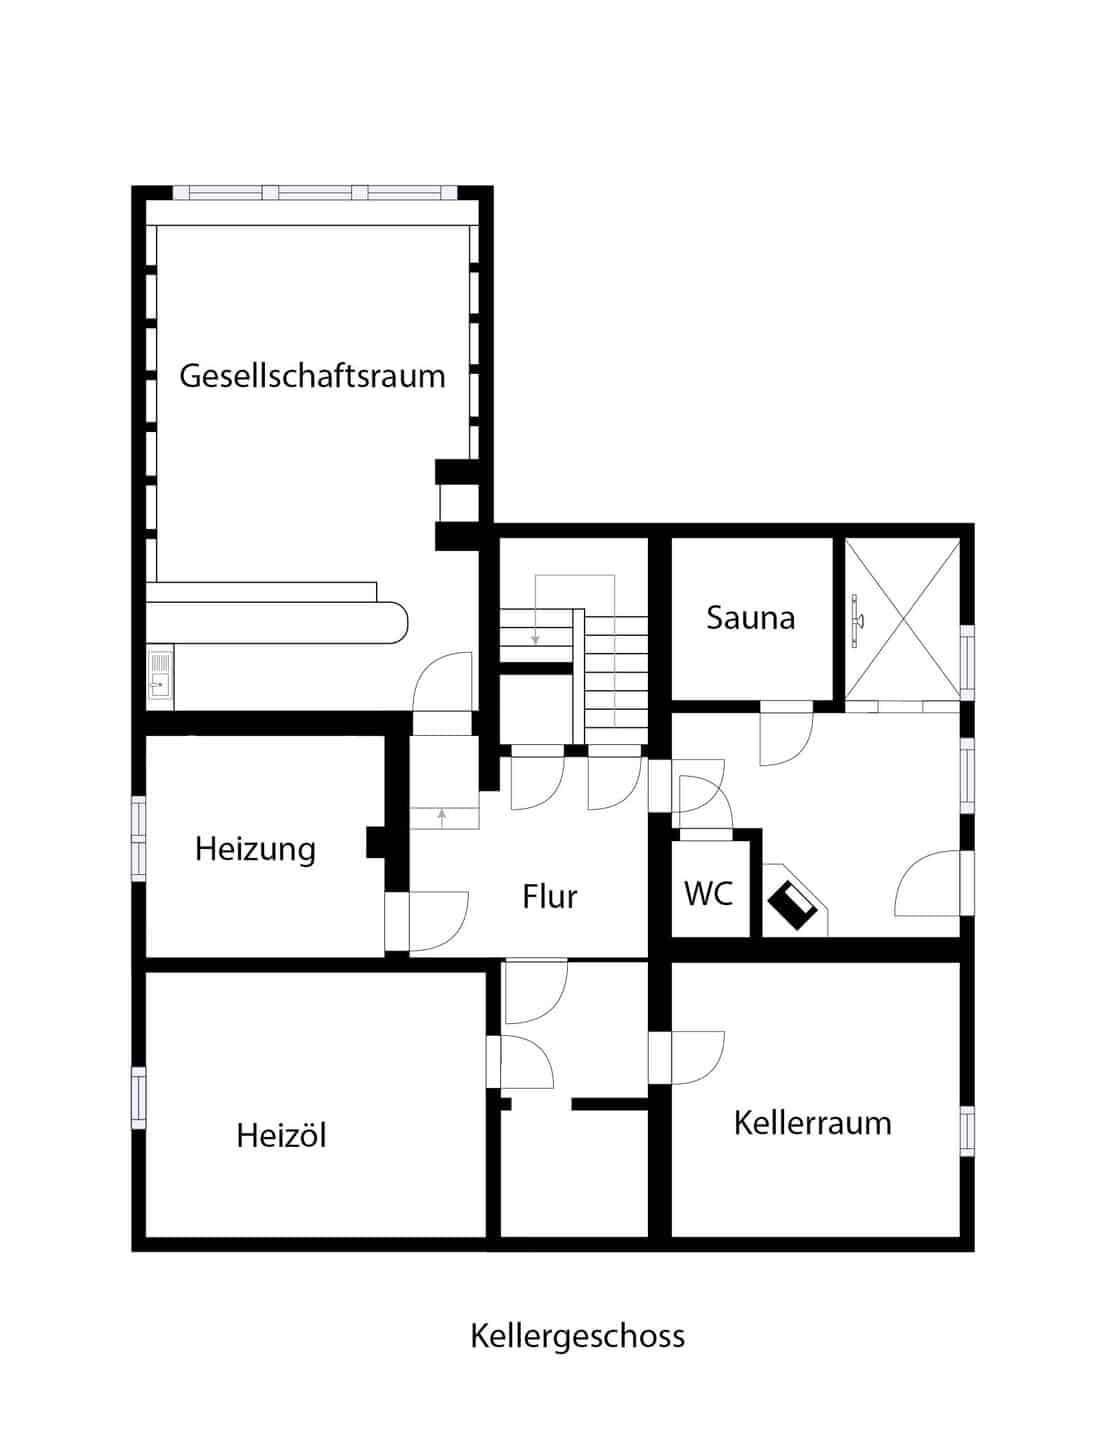 Ihr neues Zuhause? Großzügiges freistehendes Wohnhaus auf großem Grundstück in Ettlingen - Grundriss Kellergeschoss